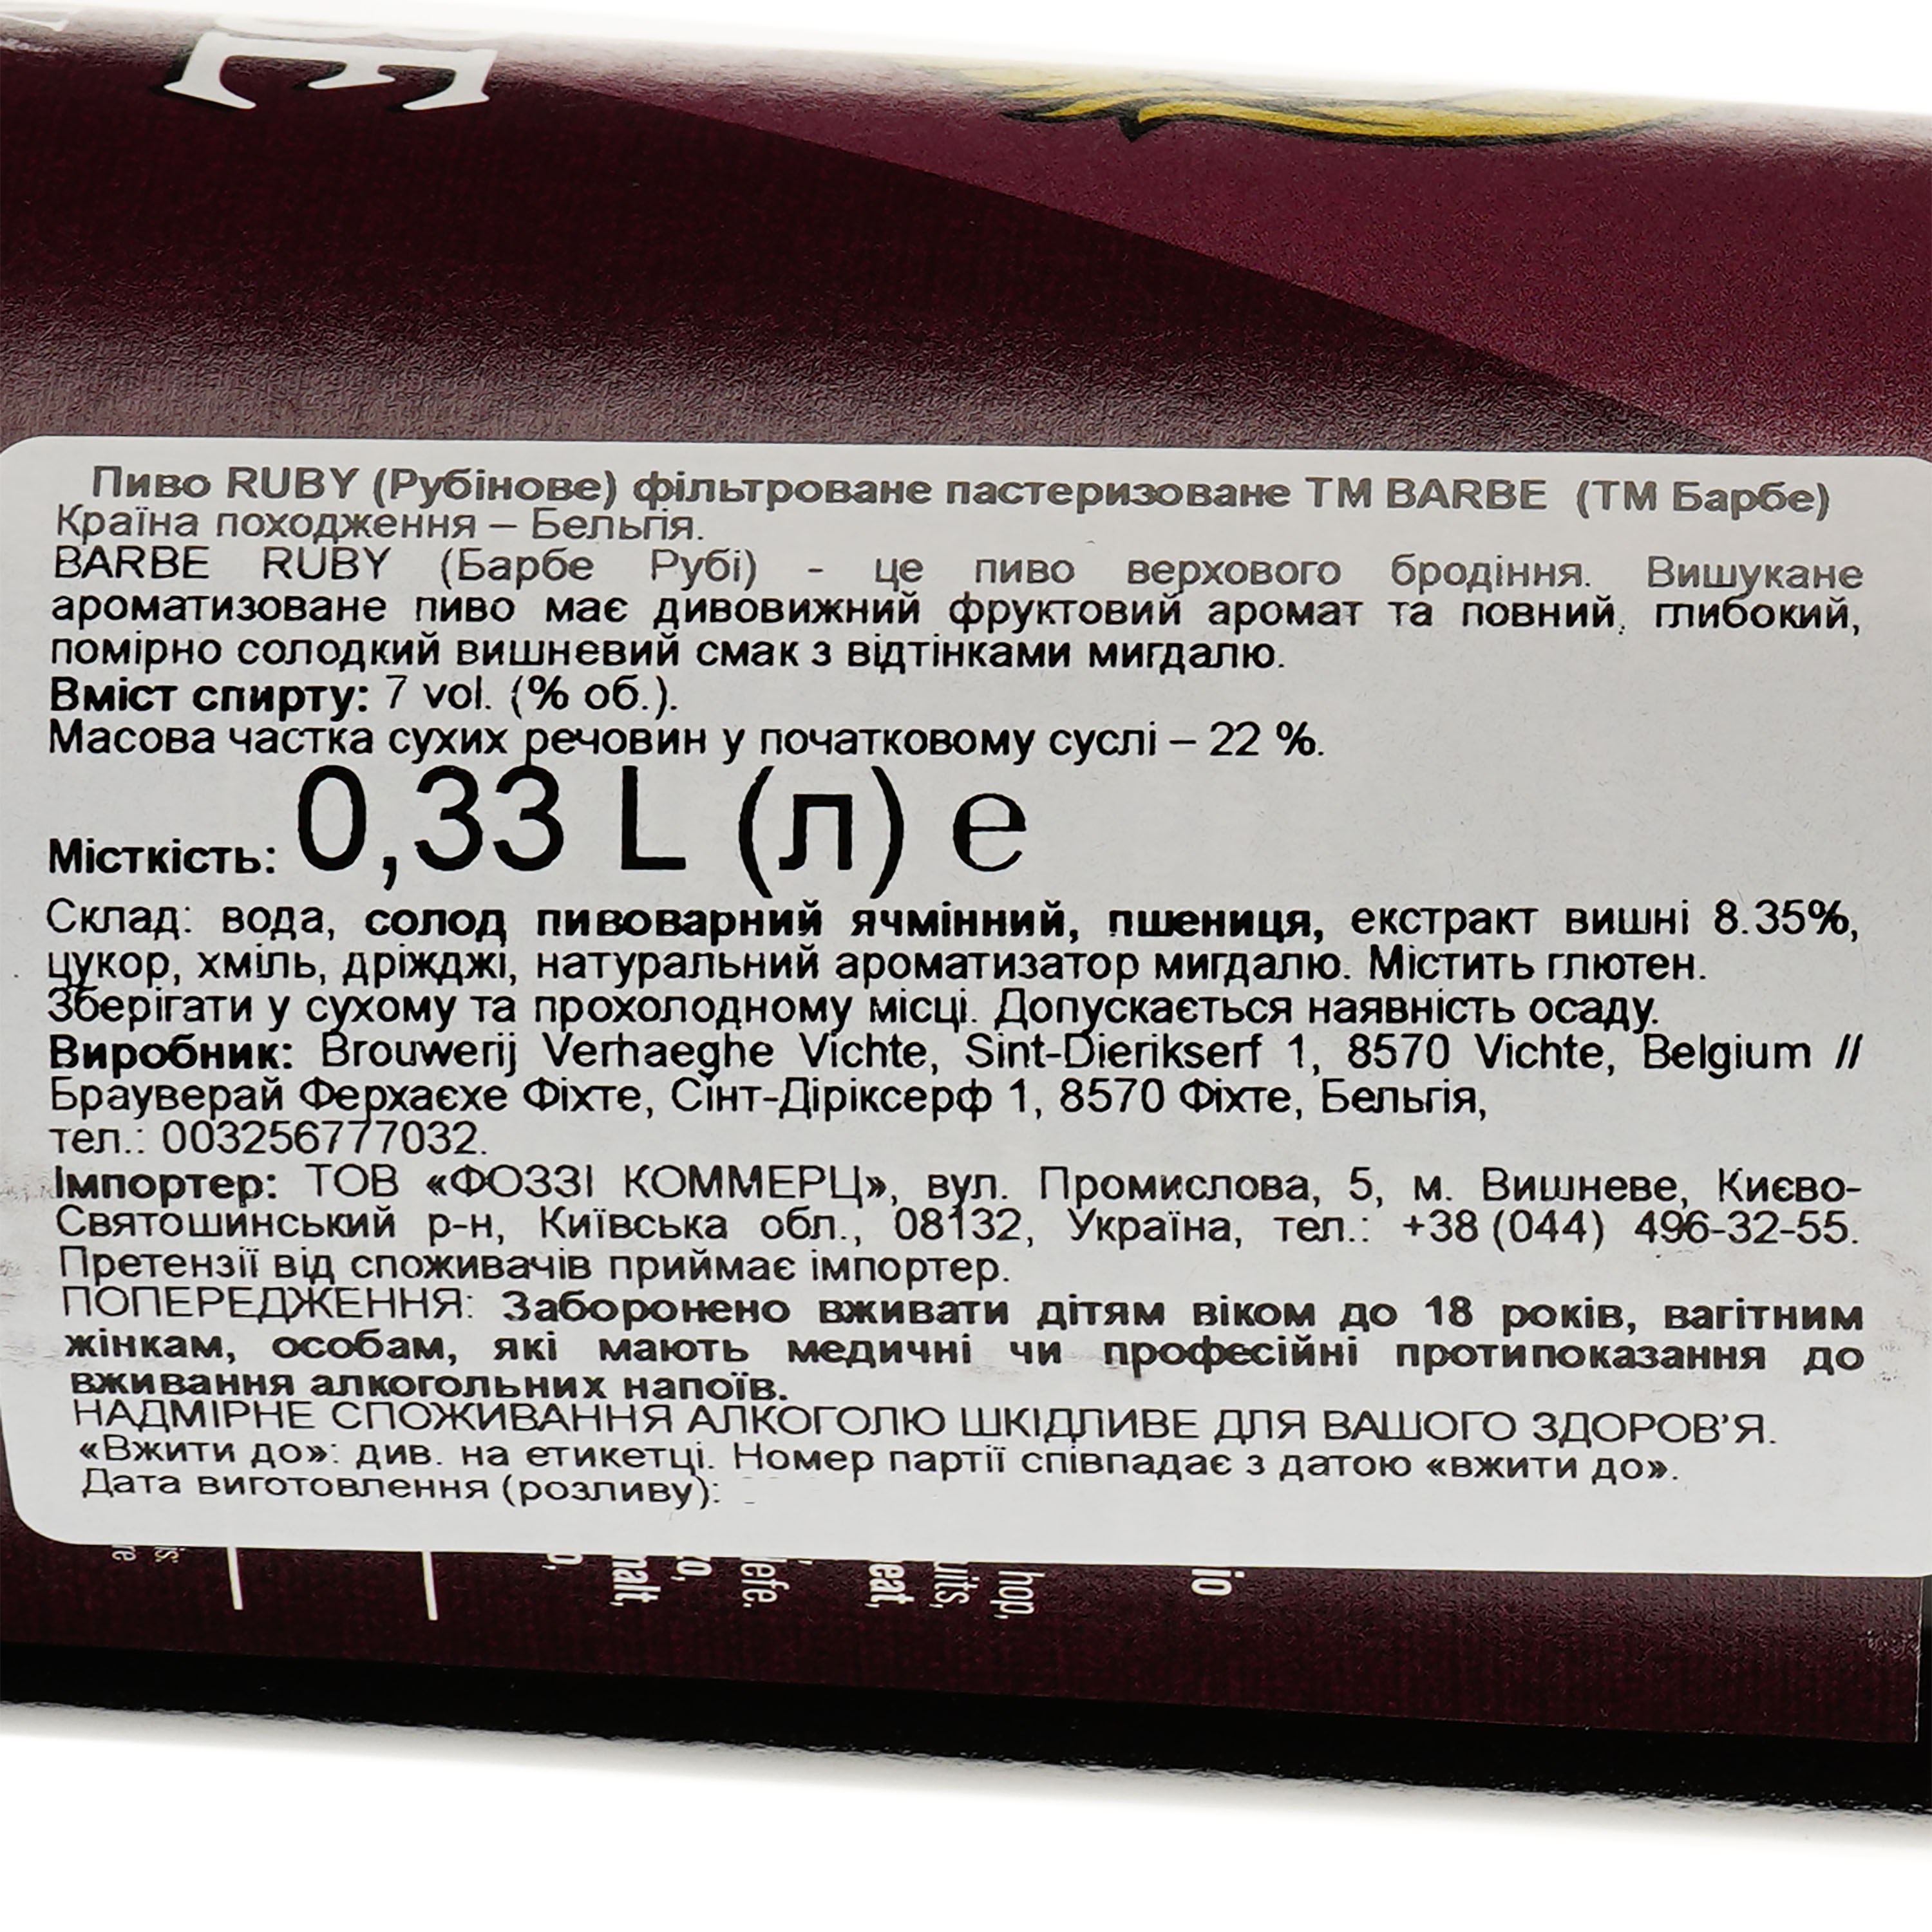 Пиво Barbe Ruby Рубінове пастер фільтроване, 7,7% 0,33 л (696333) - фото 3